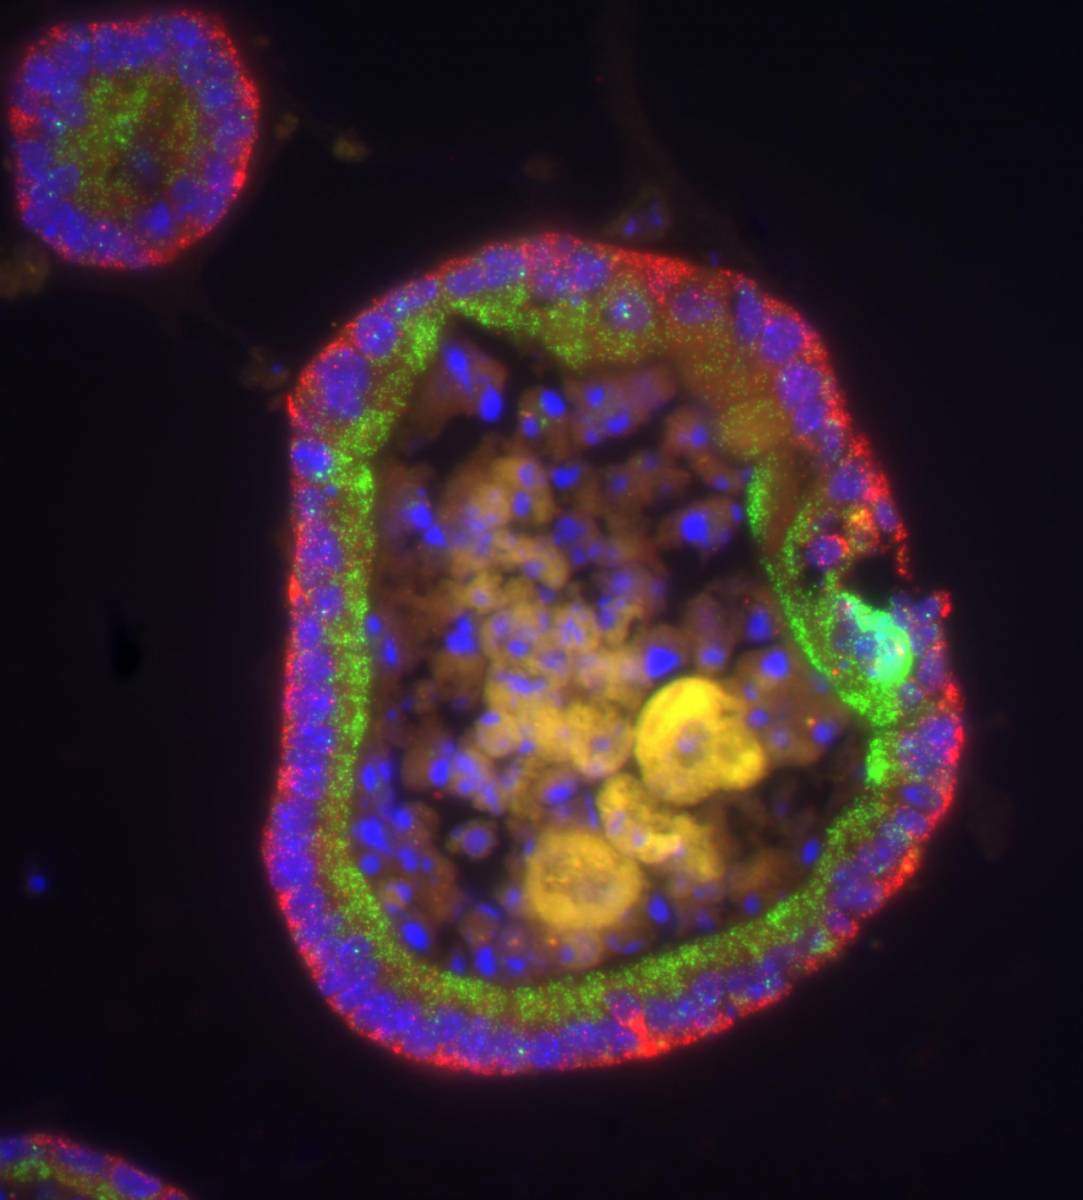 מבנה תאי עגול בגודל כ-0.5 מילימטר, אשר מחקה במבחנה את חתך המעי. בשכבתו העליונה ממוקמות מולקולות אר-אן-אי שליח של שני גנים שונים (אדום וירוק) בשני צידי הגרעין של התאים (כחול)